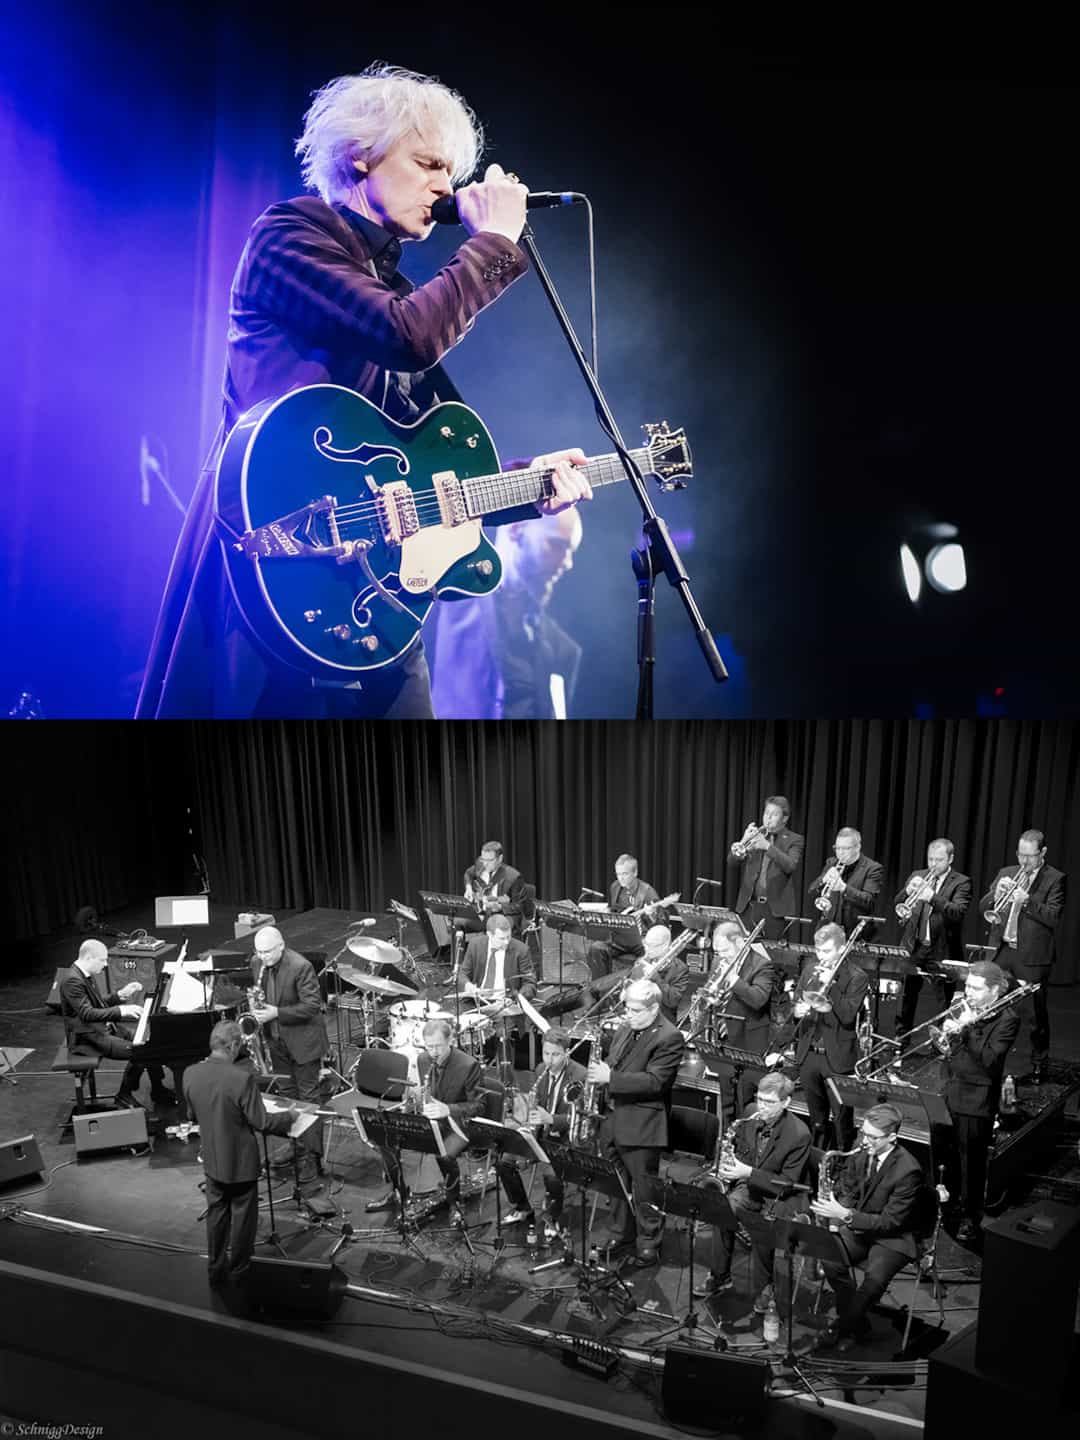 Fotos: (oben) Michael Sele / © to Julian Konrad, (unten): Big Band Liechtenstein / © by SchniggDesign